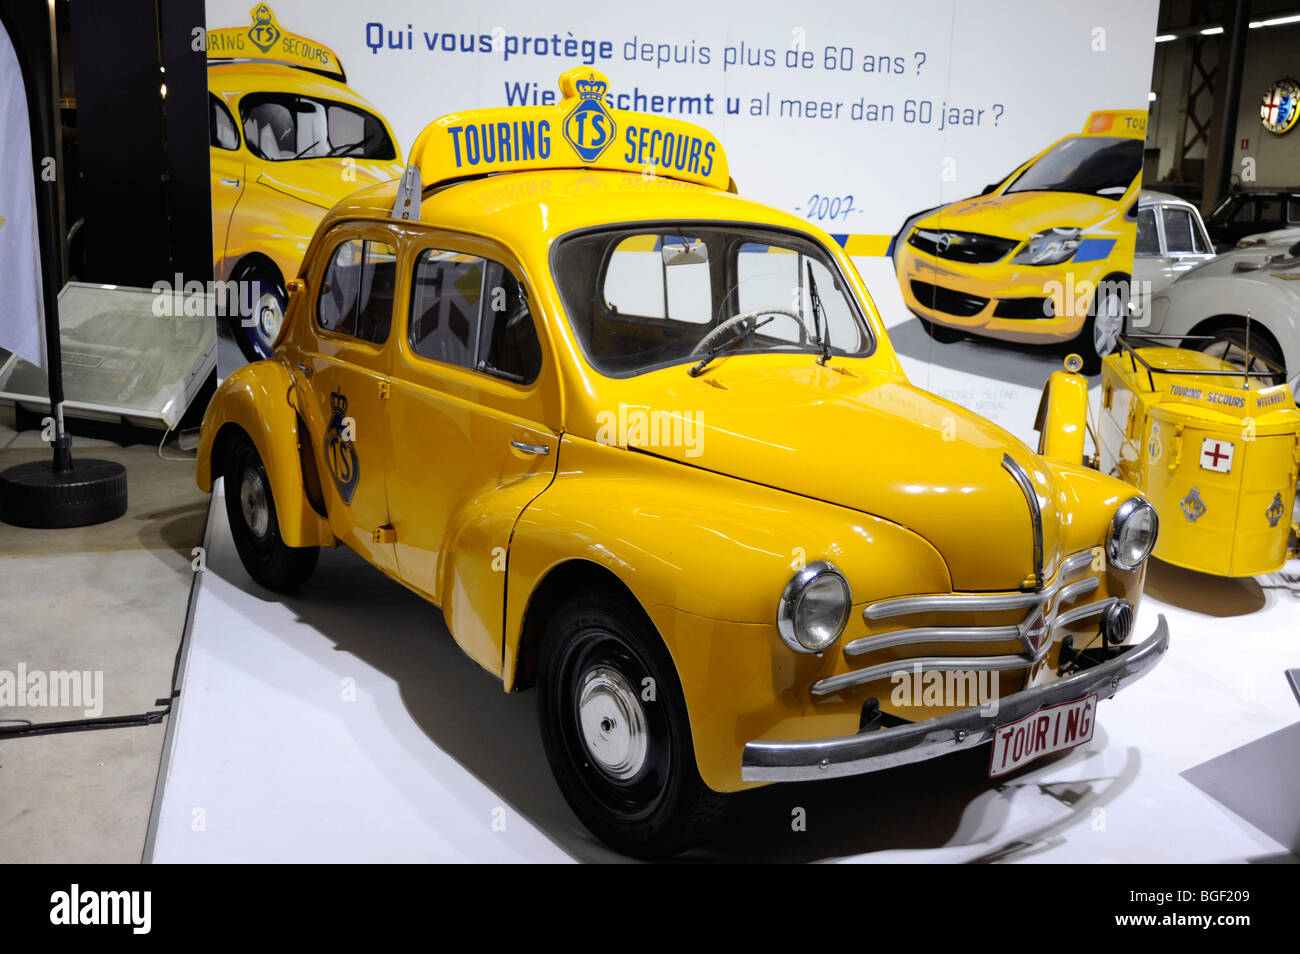 Touring Secours, Renault 4cv, Autoworld museum, Park of Fiftieth, Parc du Cinquantenaire, Brussels, Belgium Stock Photo